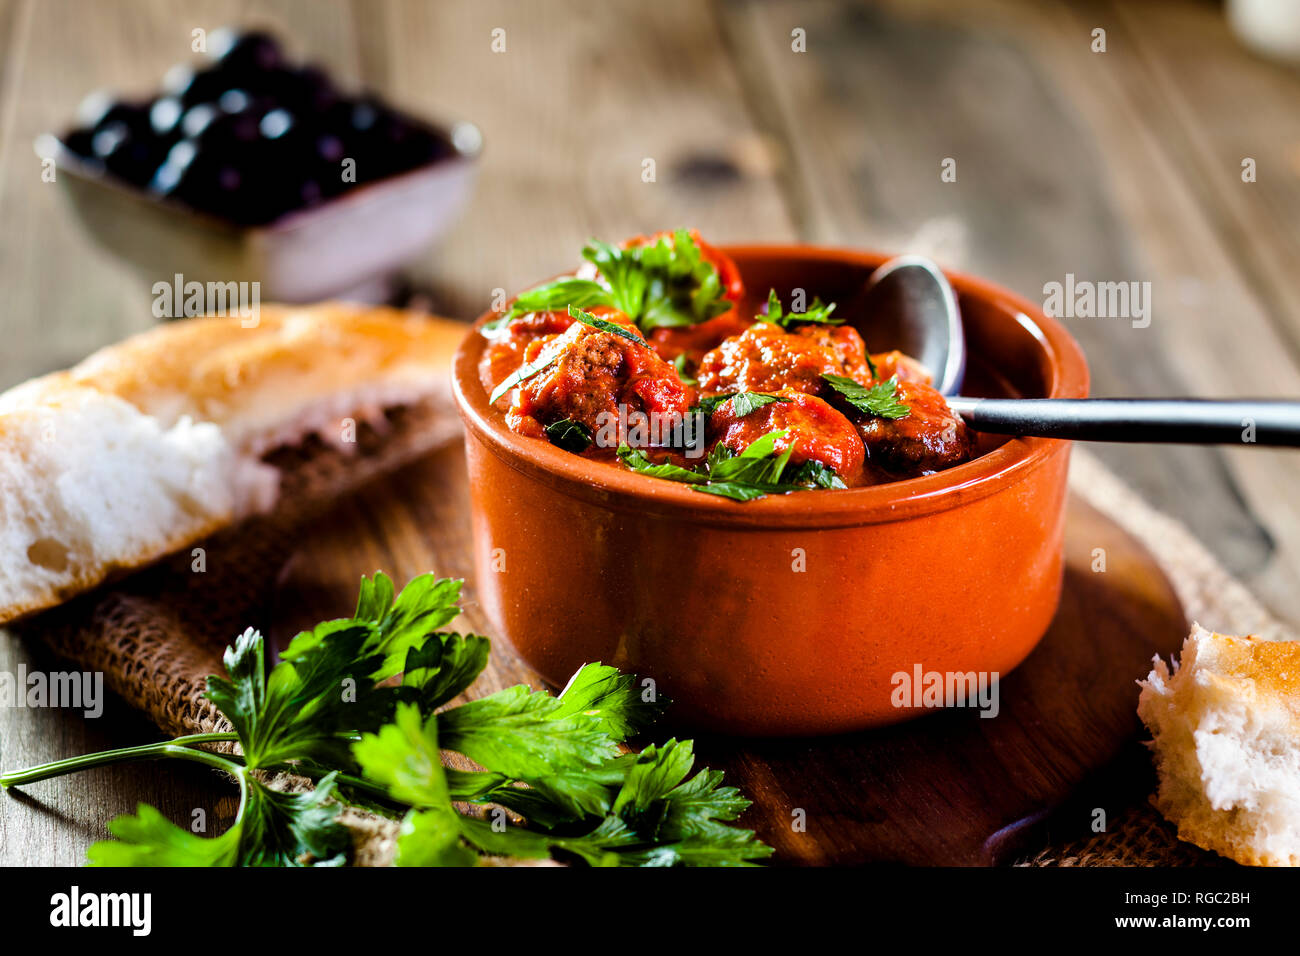 Lo spagnolo Albondingas, polpette di carne in piccante salsa di pomodoro Foto Stock